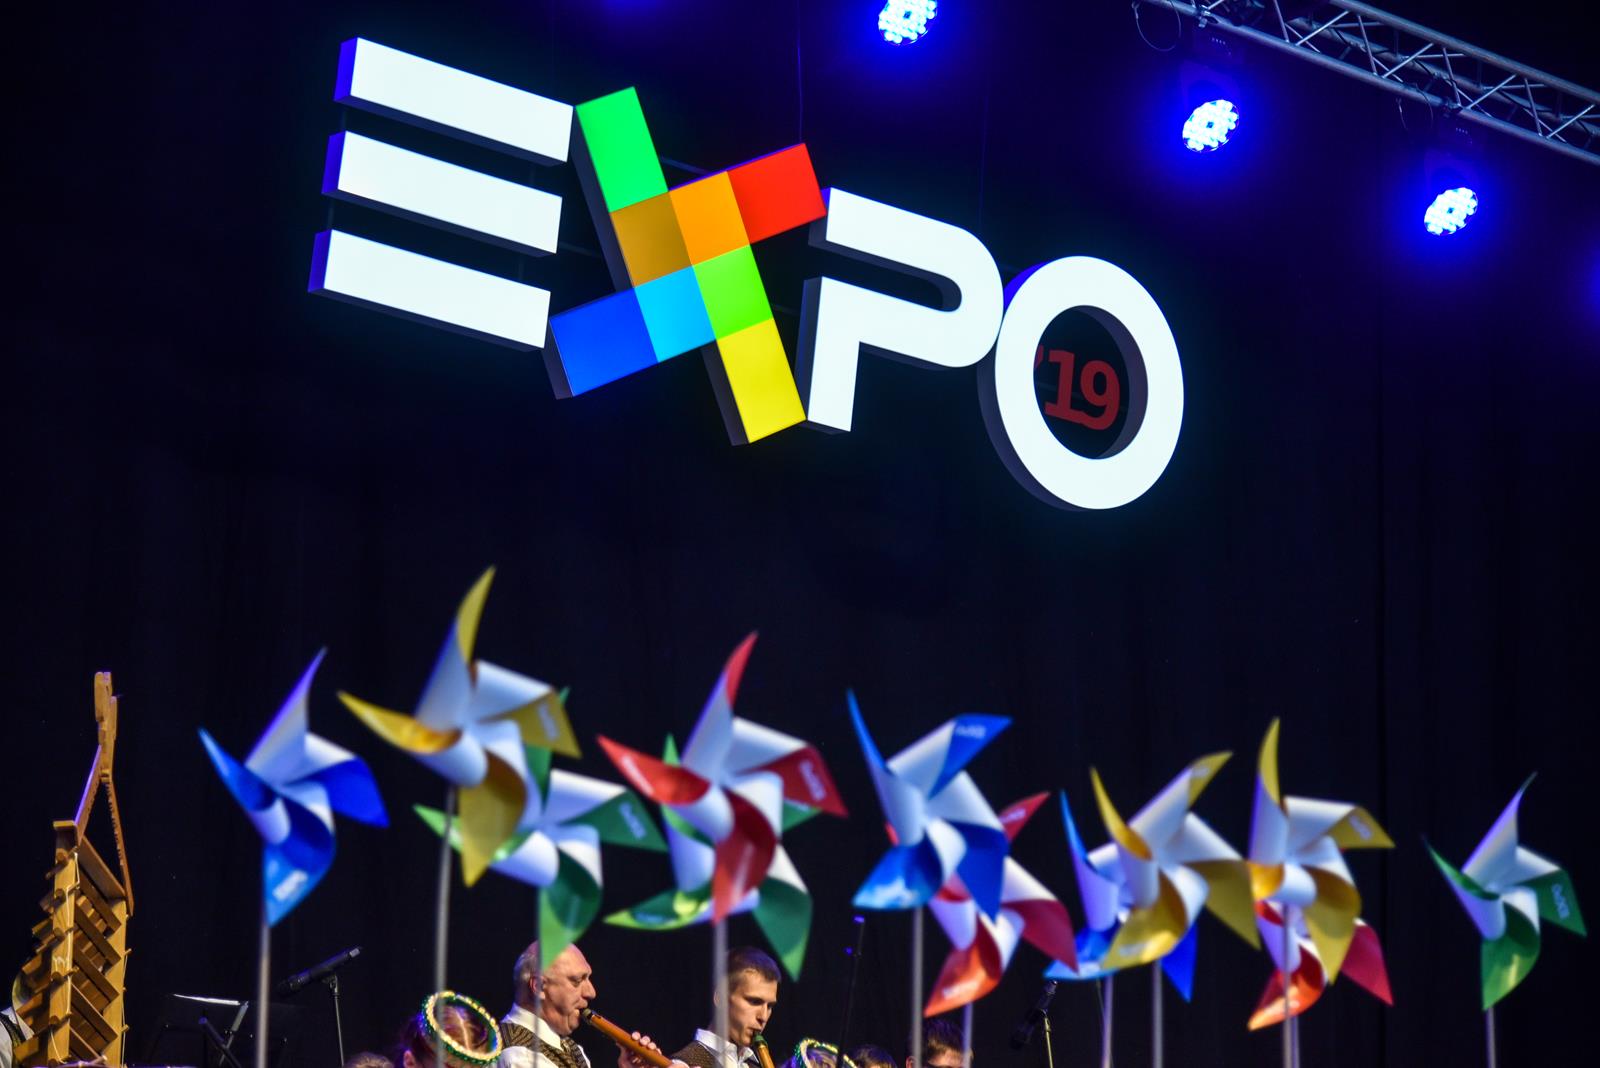 Panevėžyje jau 24-ą kartą šurmuliuoja tarptautinė paroda „EXPO Aukštaitija 2019“, sutraukusi per pusantro šimto dalyvių iš įvairių šalies kampelių. Jau vienuoliktą kartą „Cido“ arenoje vykstančiame reikšmingiausiame regiono metų verslo renginyje visą savaitgalį bus galima pirkti, parduoti, išvysti naujoves, pasidomėti ne tik verslo, bet ir švietimo, kultūros pasiekimais.